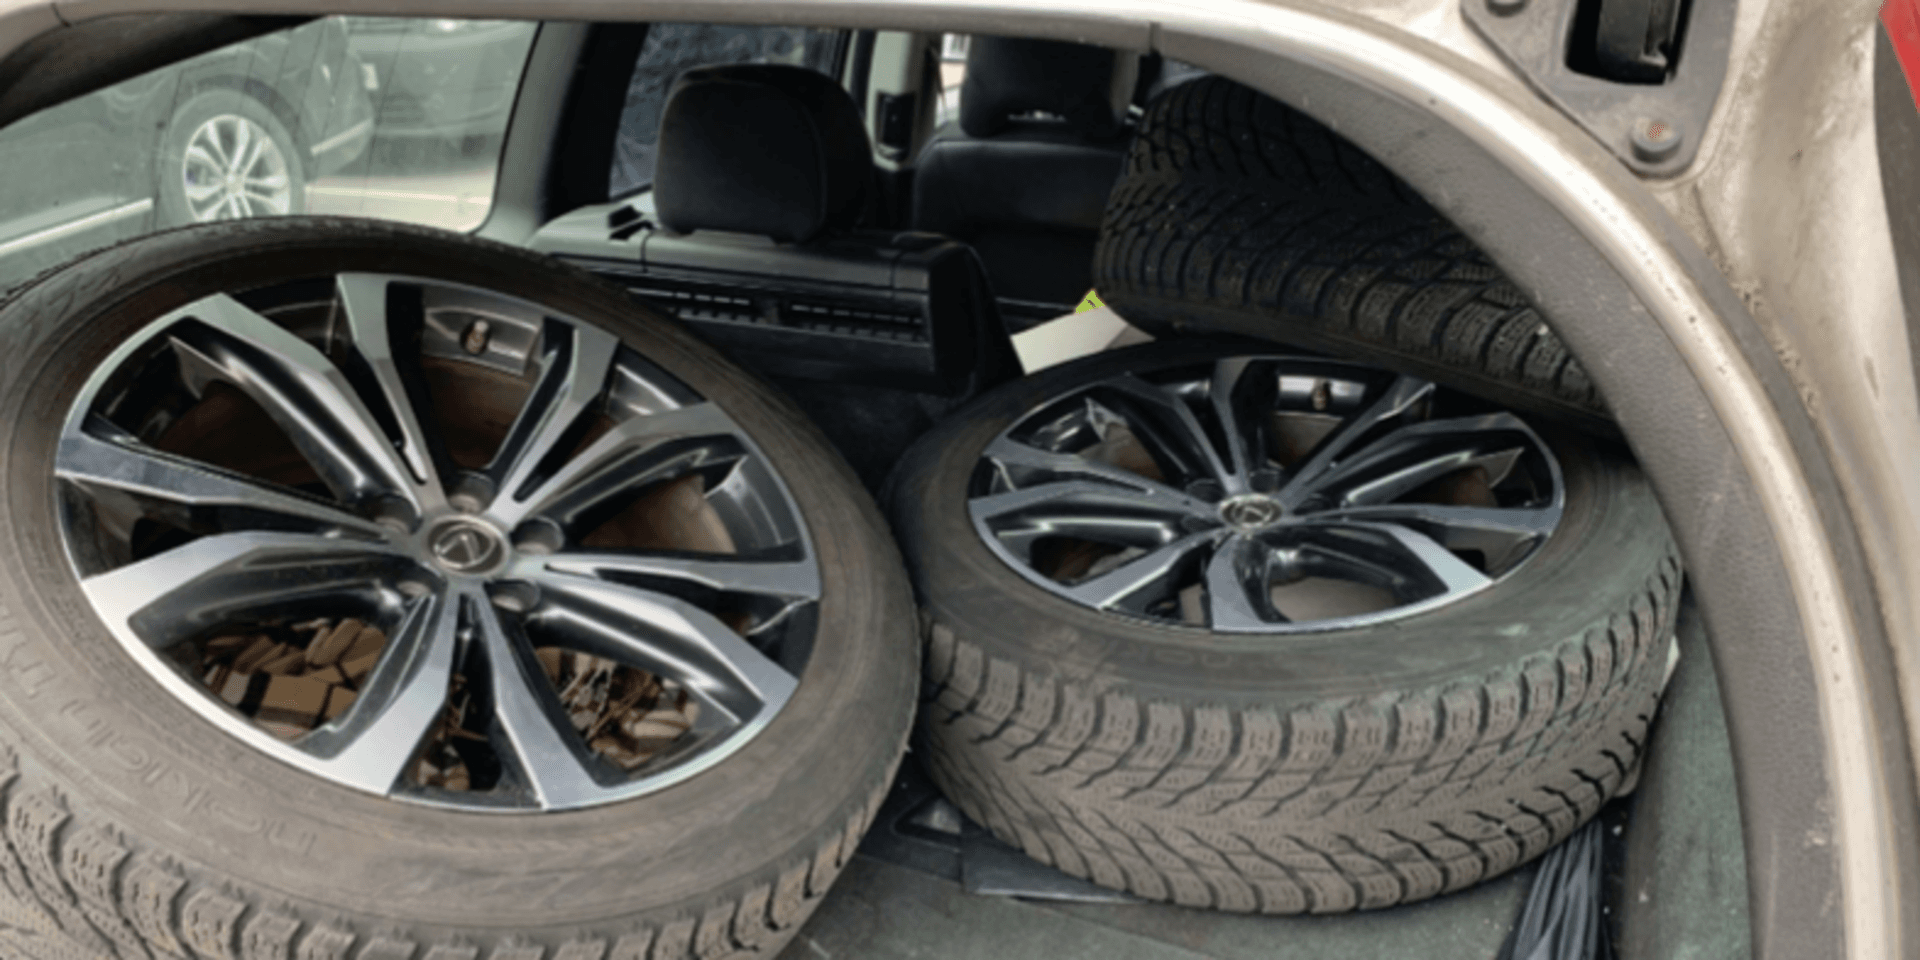 Tre av bildäcken från Lexus återfanns i rånarnas bil.